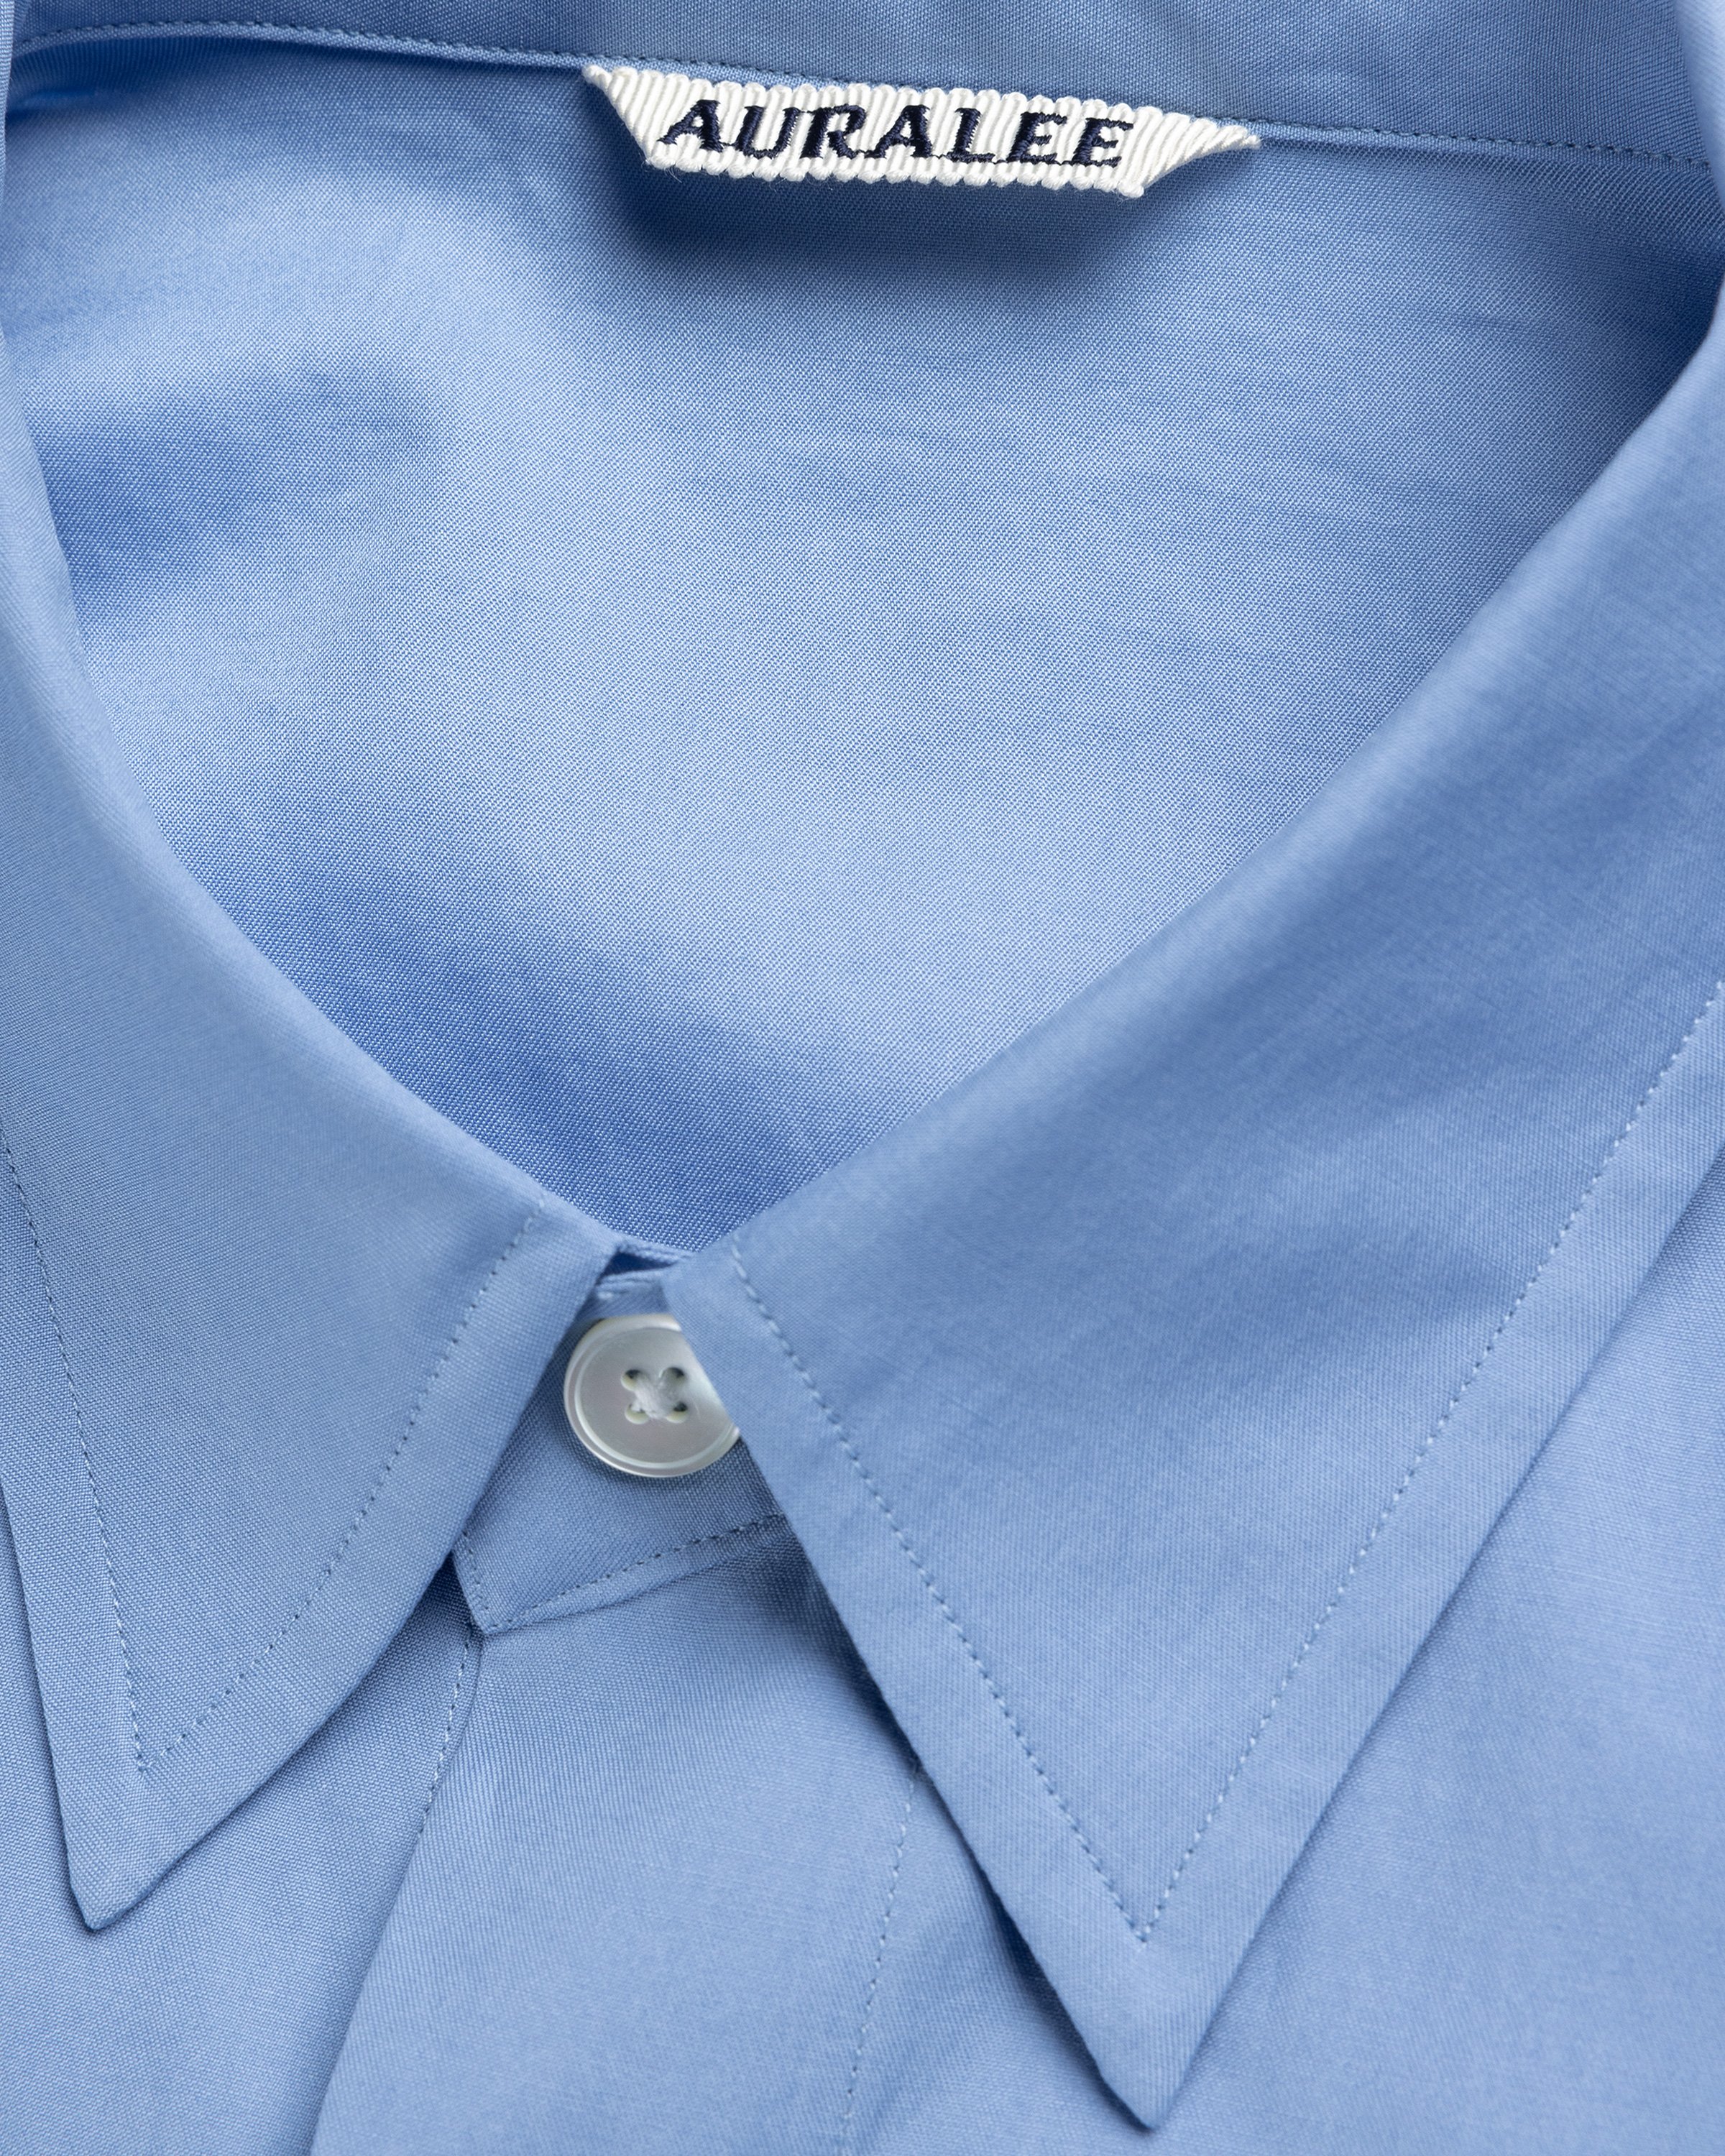 Auralee - Washed Finks Twill Big Shirt Blue - Clothing - Blue - Image 6